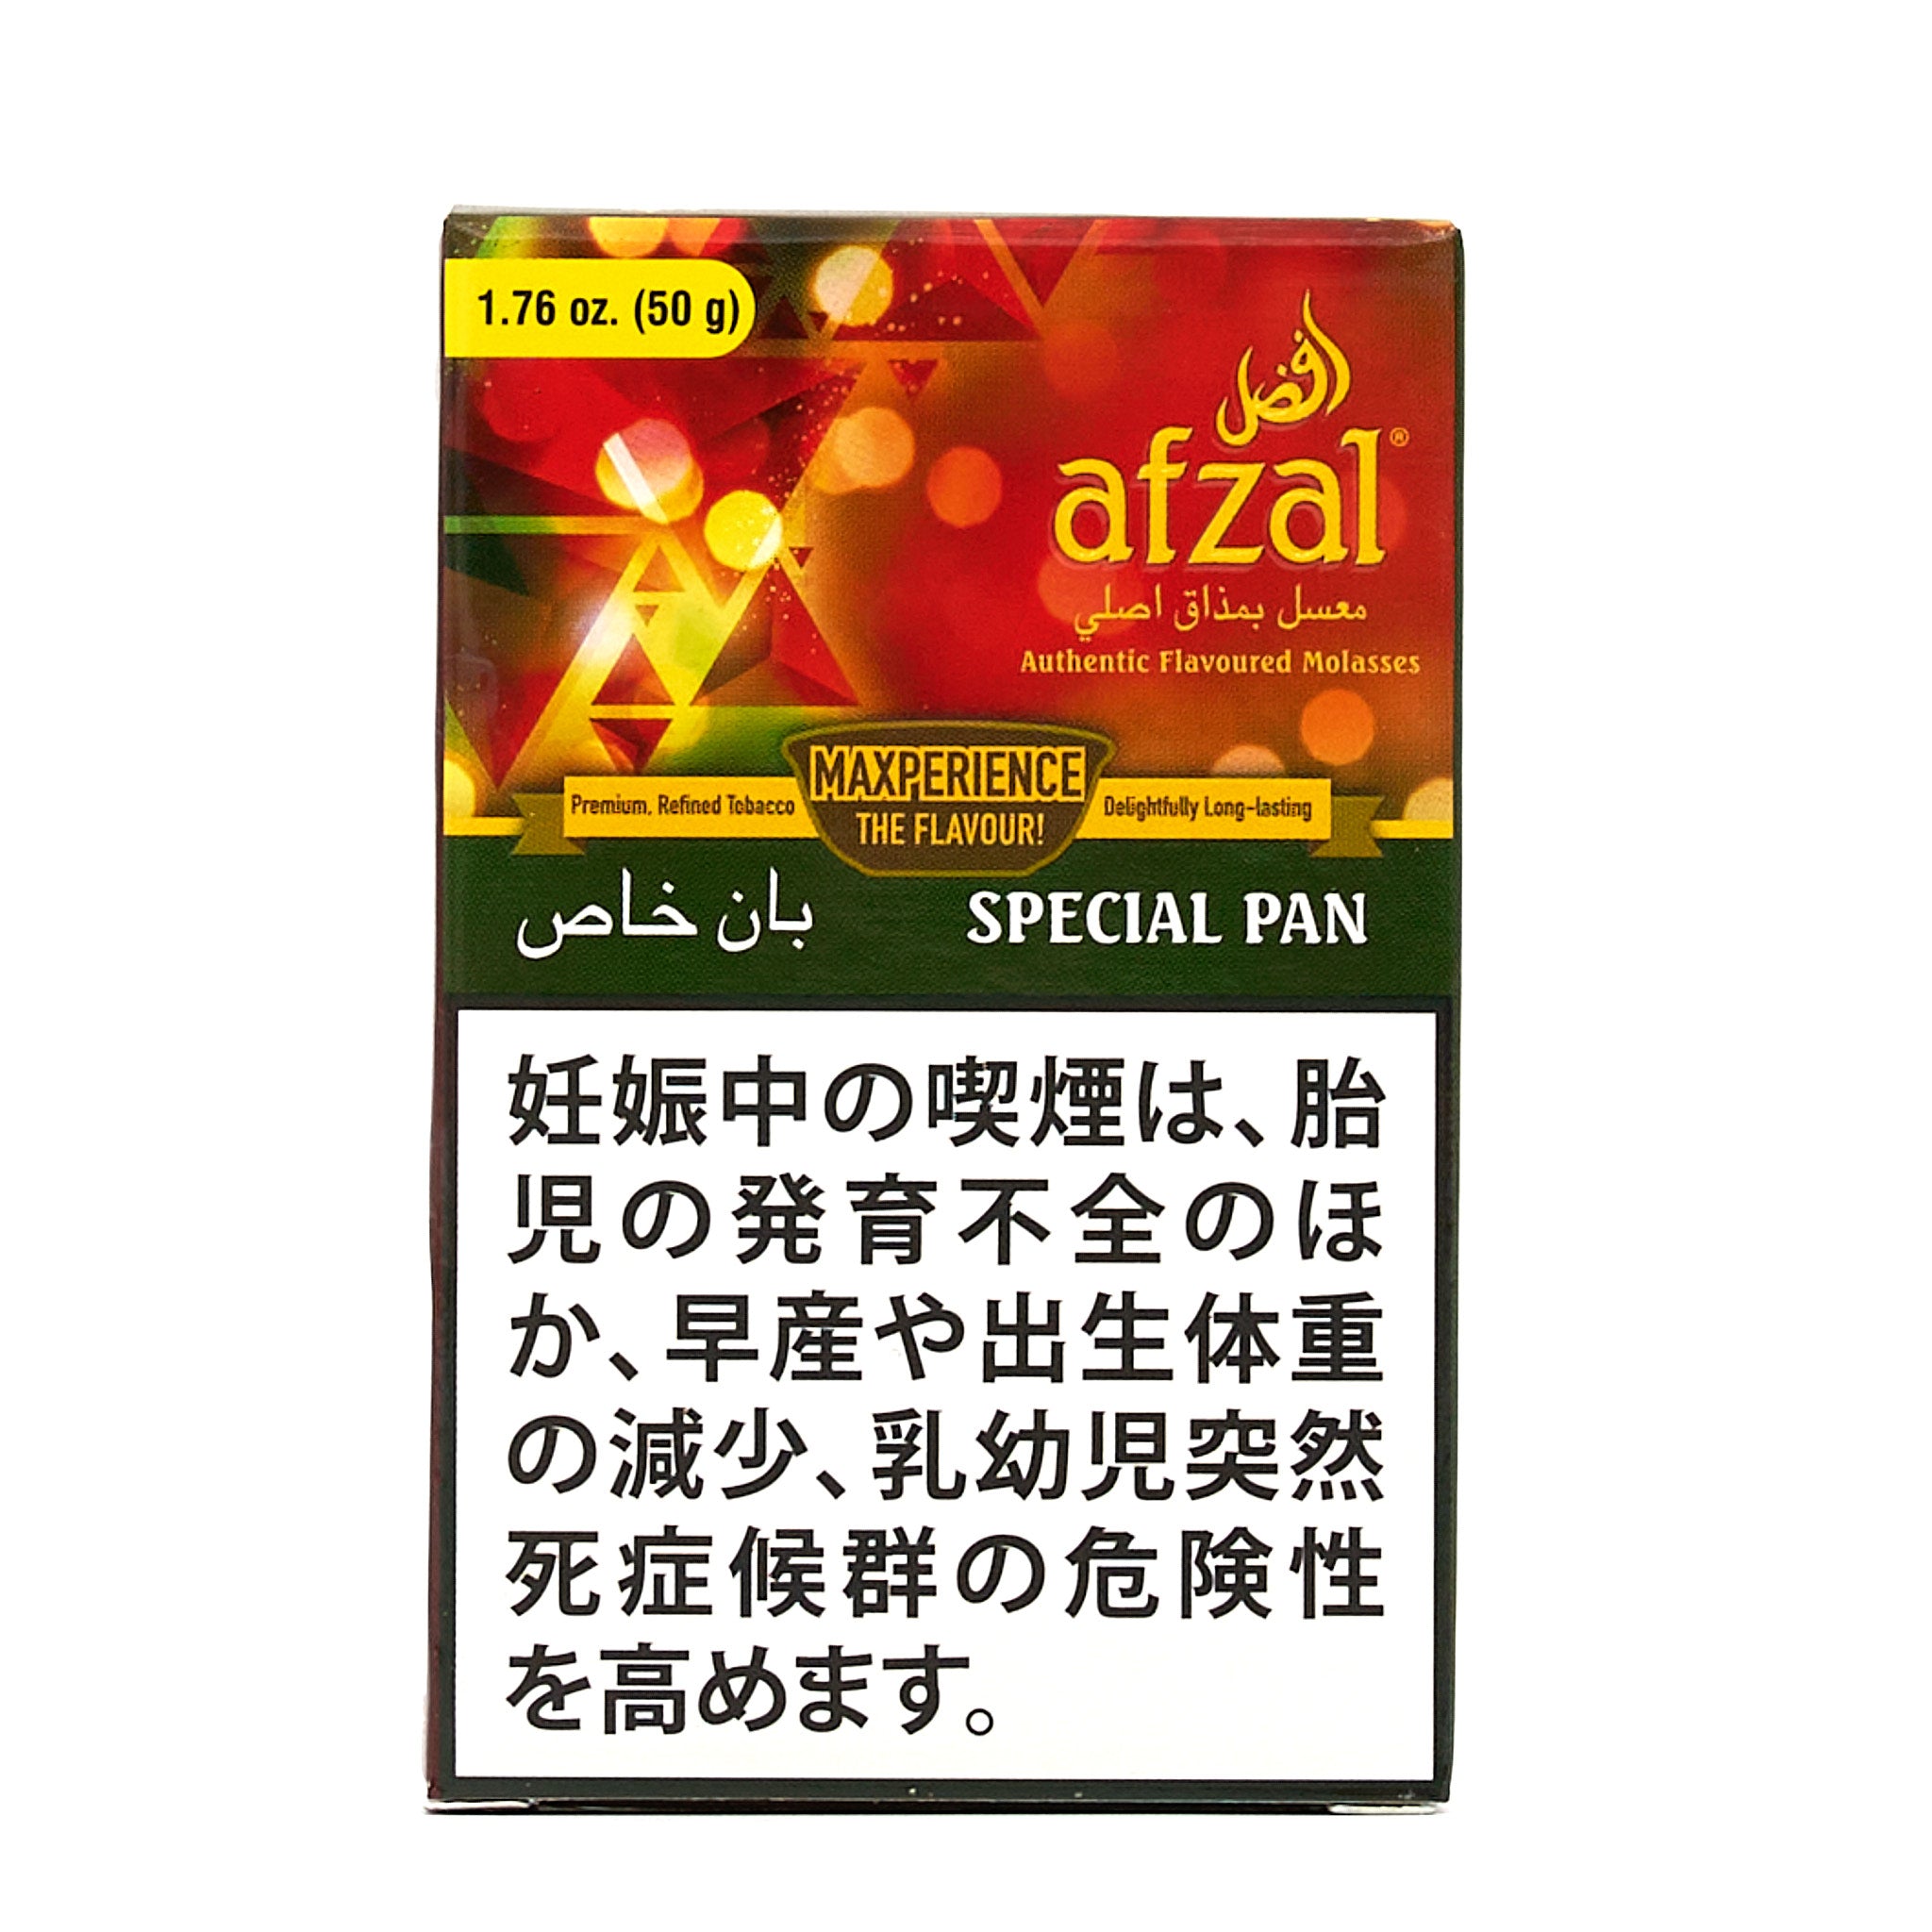 Special Pan / スペシャルパン (50g)